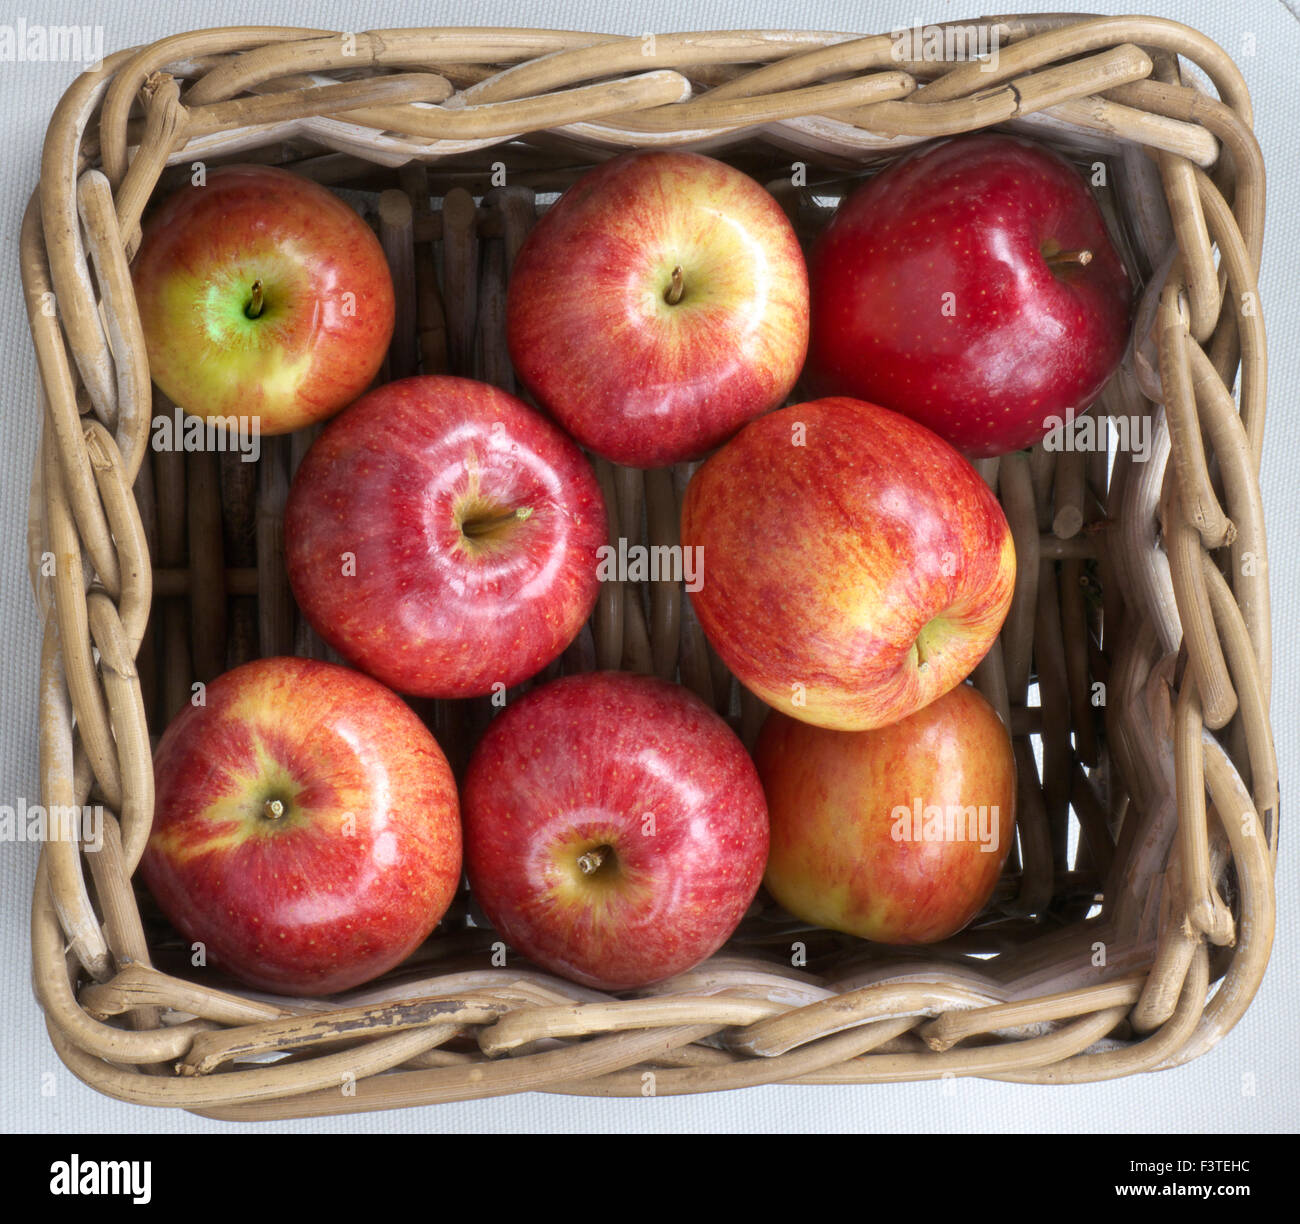 Perfetto lucido non marcati dolce di mele Gala in Farm Shop cesto in vimini sul display per la vendita Foto Stock